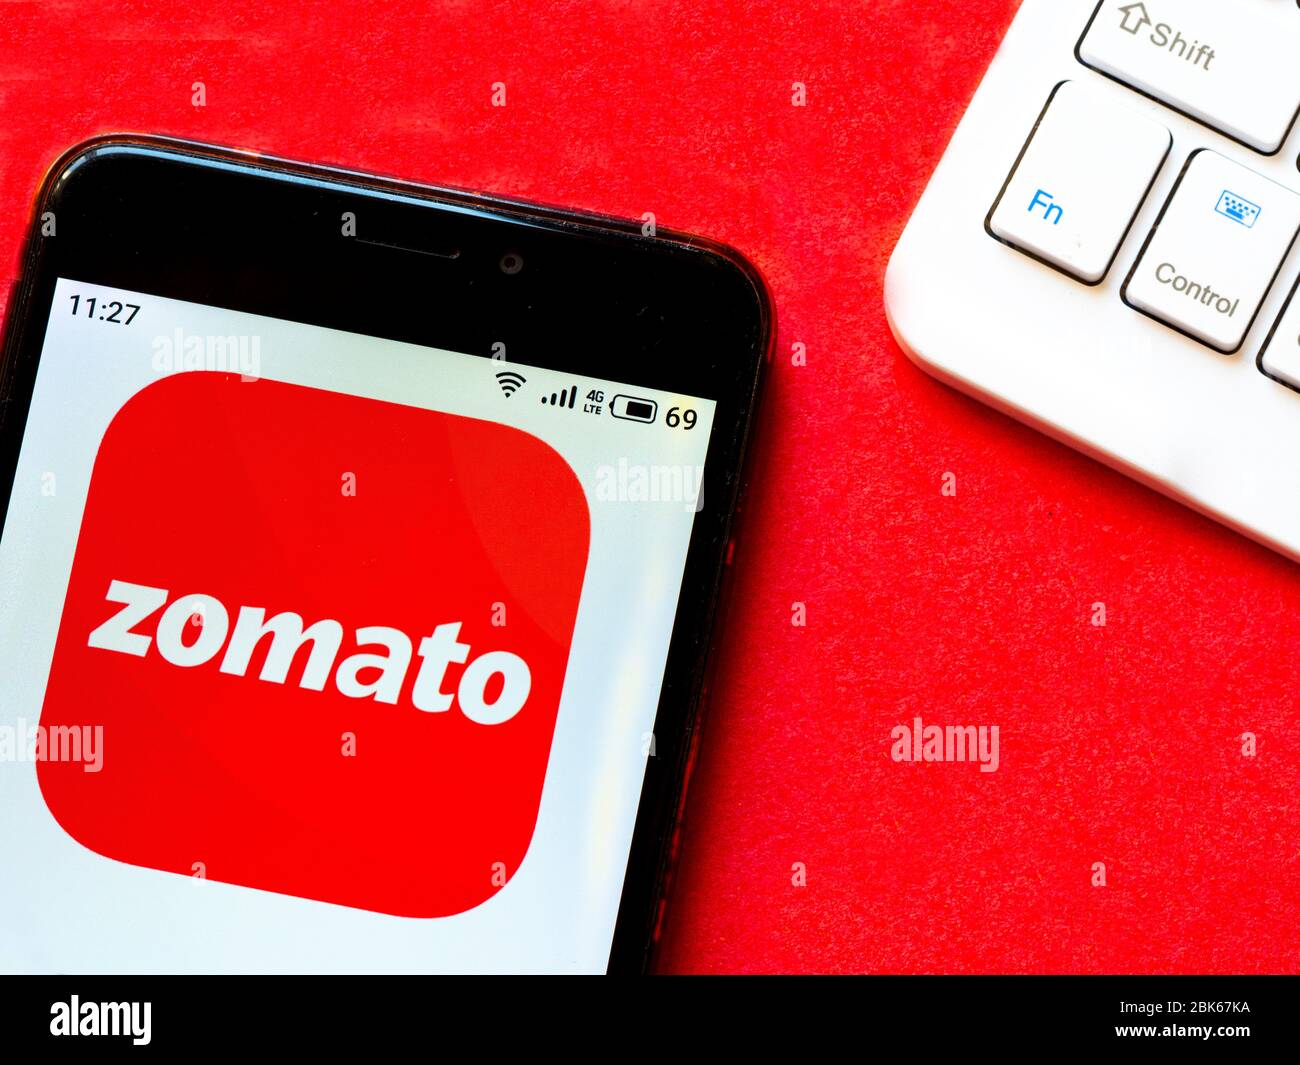 Amazon India Tried Trolling Zomato, But Zomato's Response Was Epic - Inc42  Media